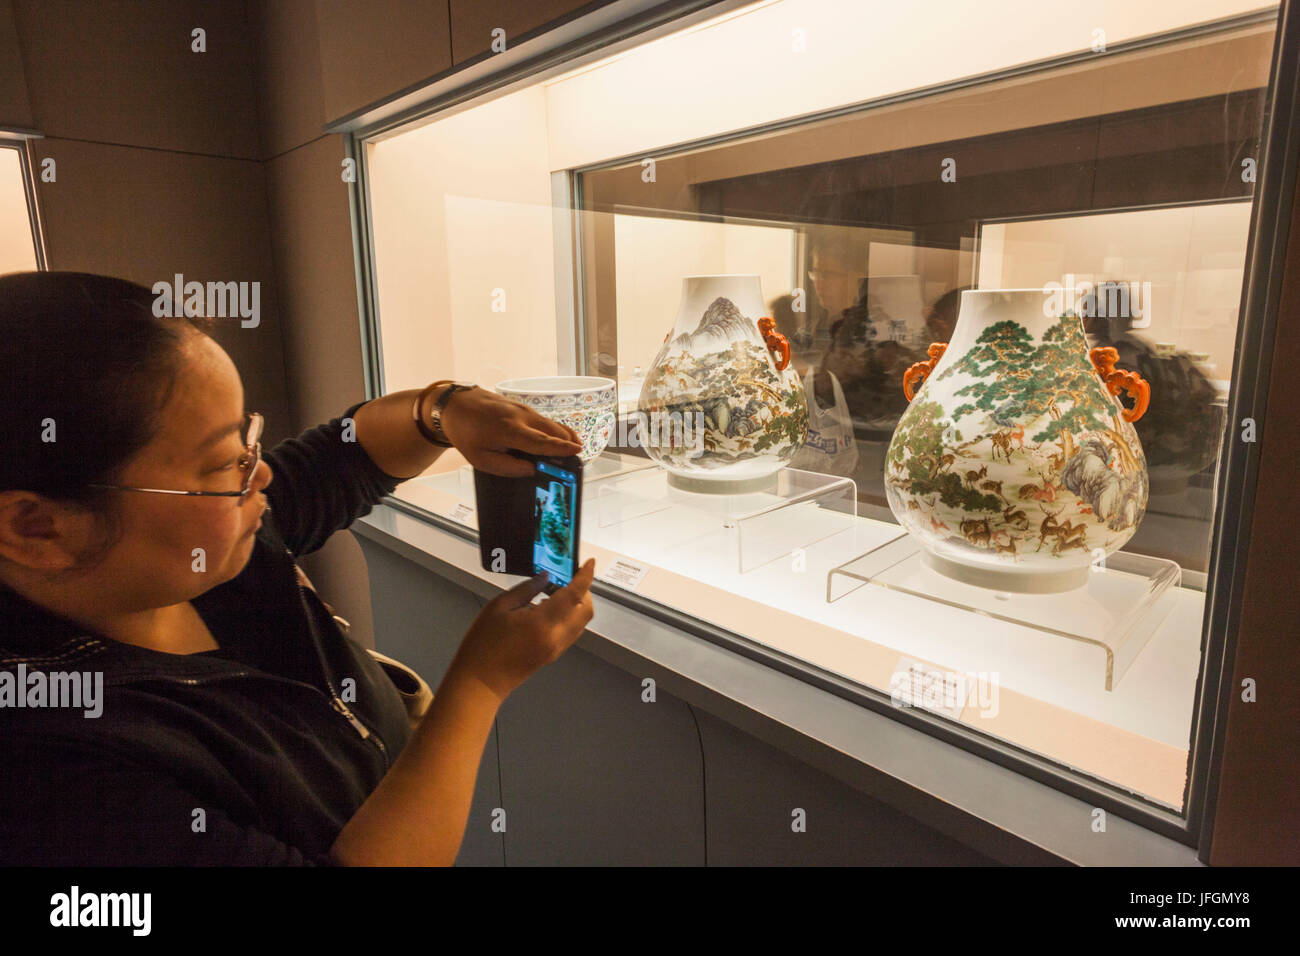 La Chine, Shanghai, Musée de Shanghai, Girl Taking Photo de poteries anciennes Afficher Banque D'Images